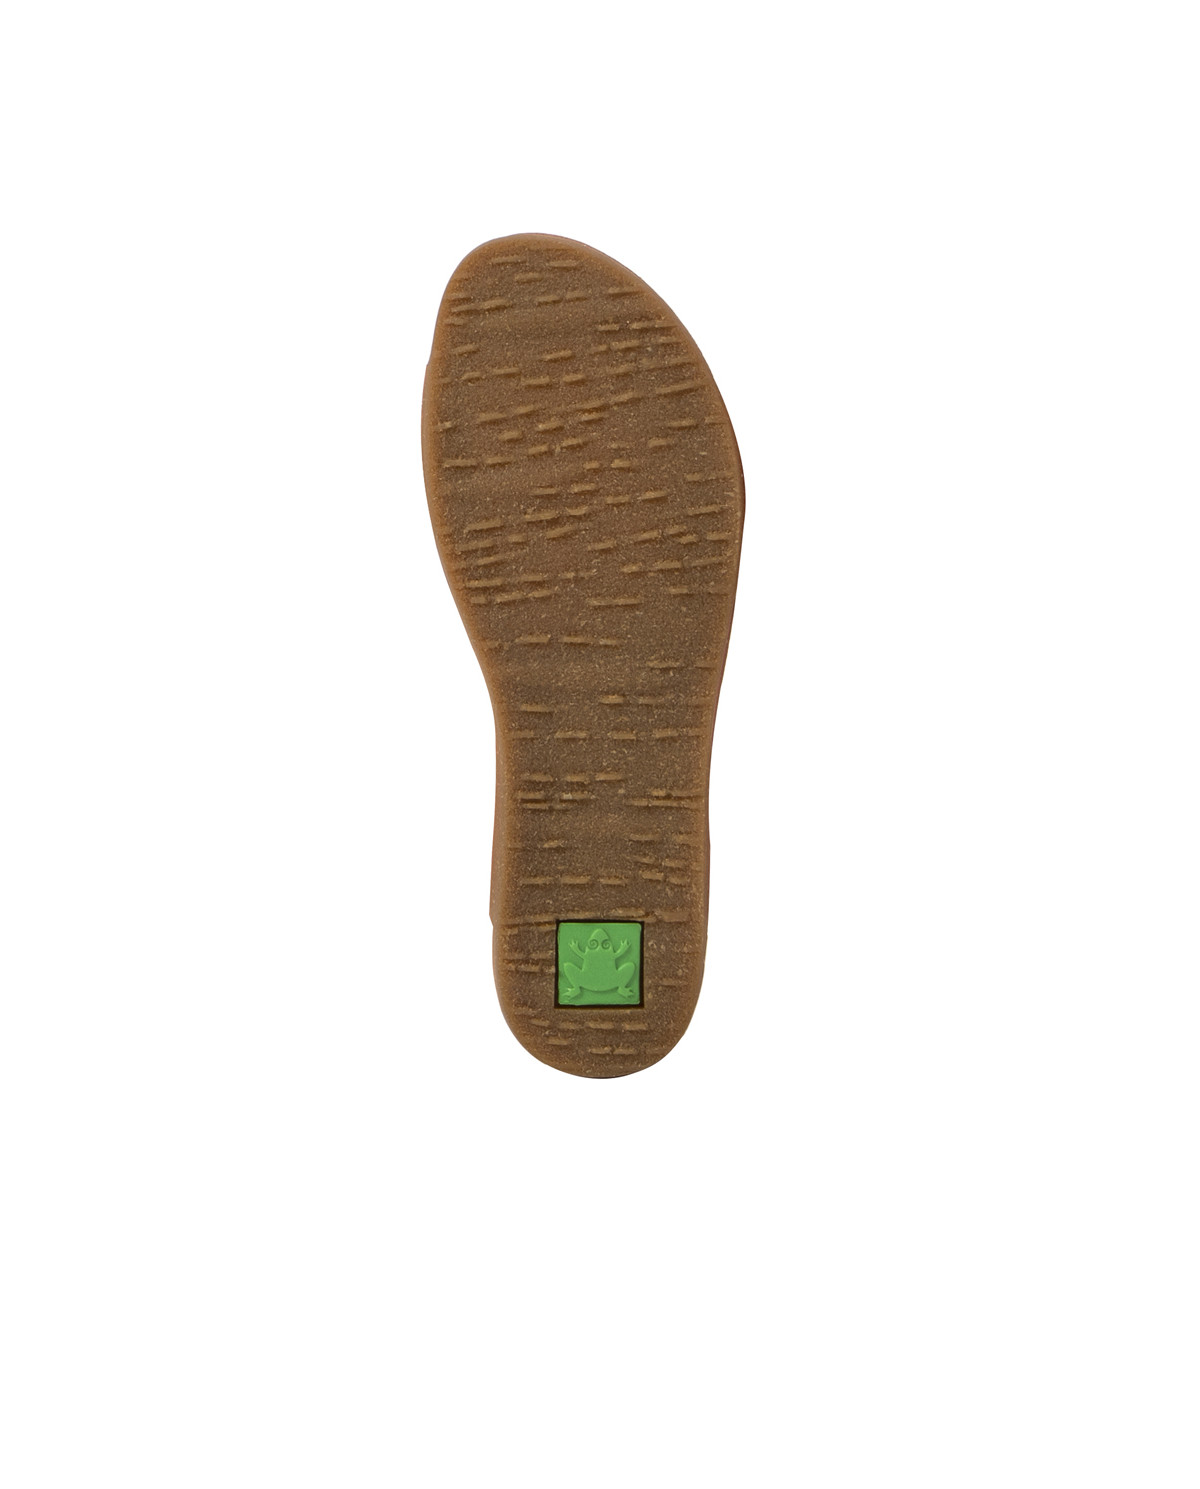 Sandales confortables plates en cuir à semelles ultra confort - Marron - El naturalista